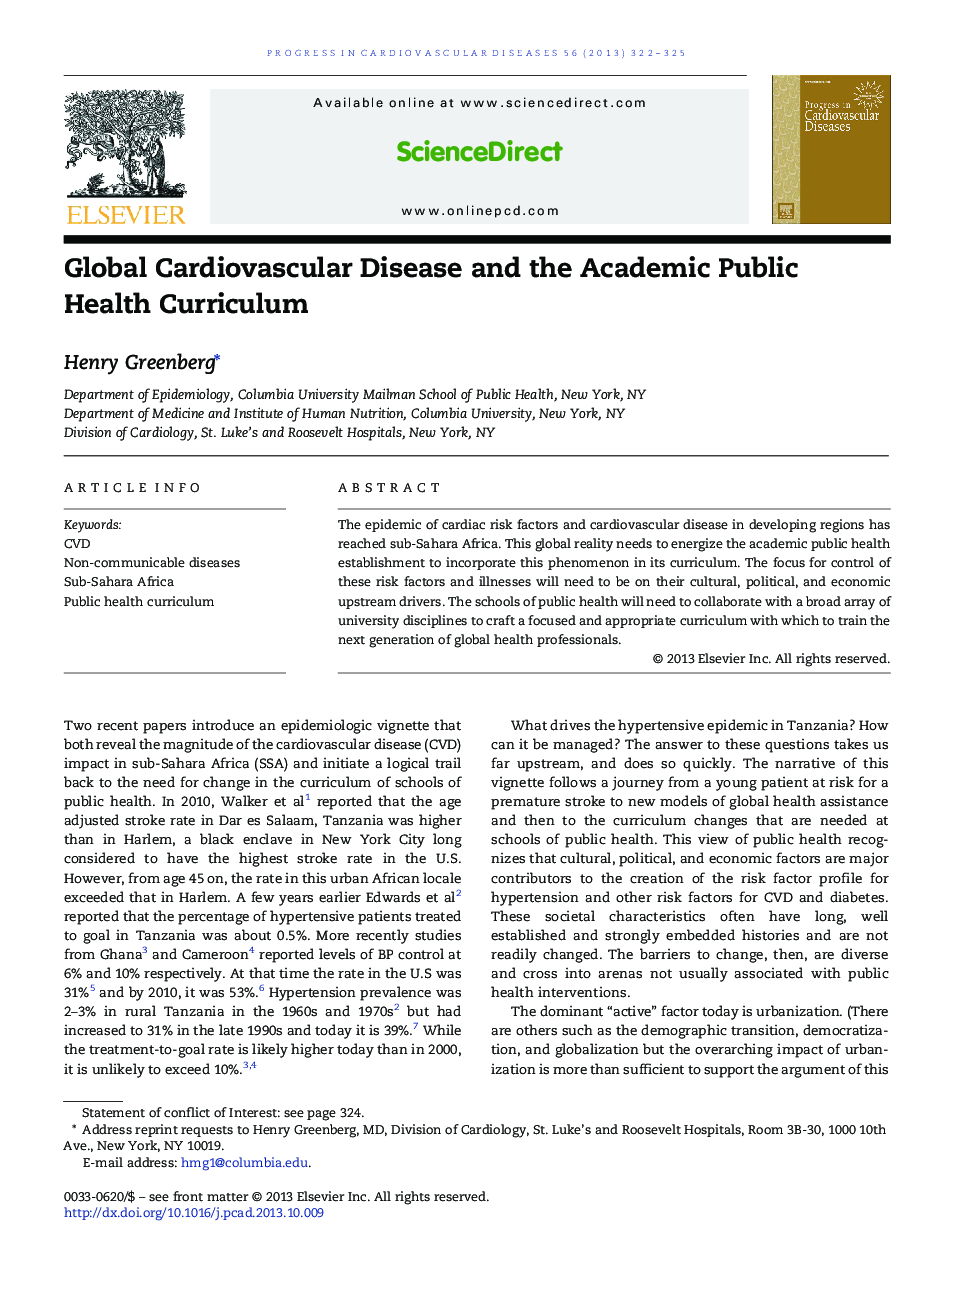 Global Cardiovascular Disease and the Academic Public Health Curriculum 